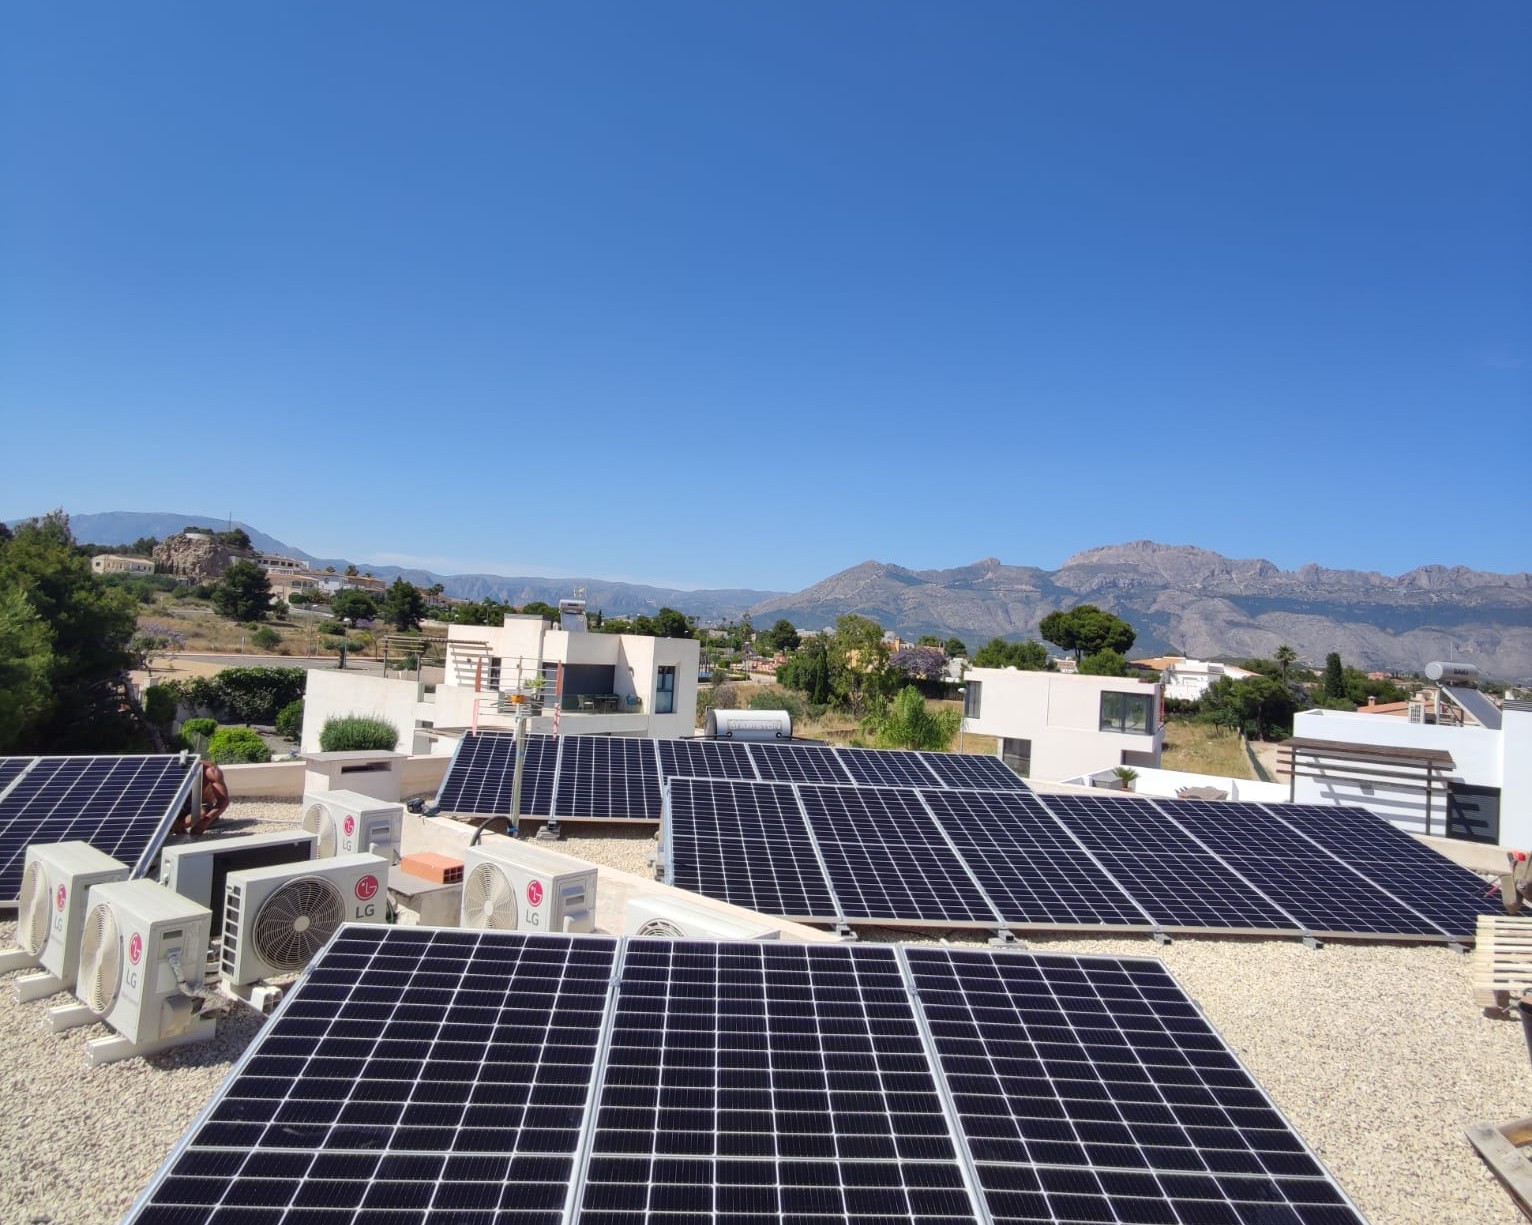 17X 460 wp Paneles Solares, La Nucia, Alicante (Sistema híbrido)